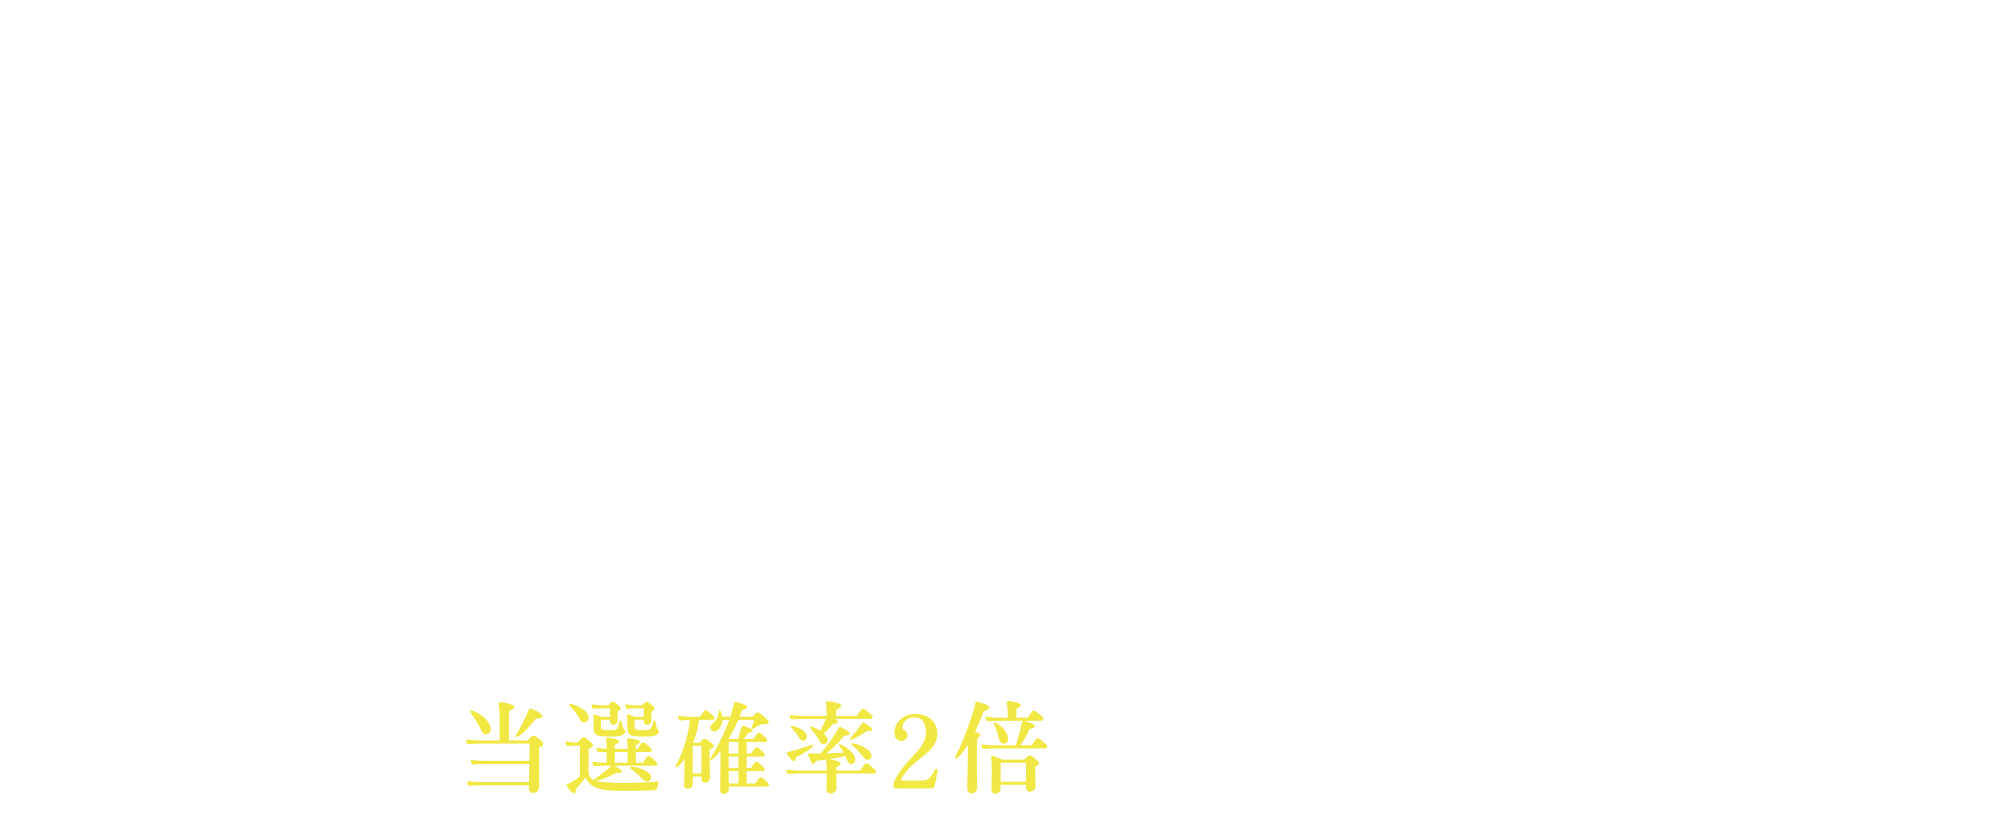 応募方法 Club JRA-Net通信受信者は当選確率2倍になります。